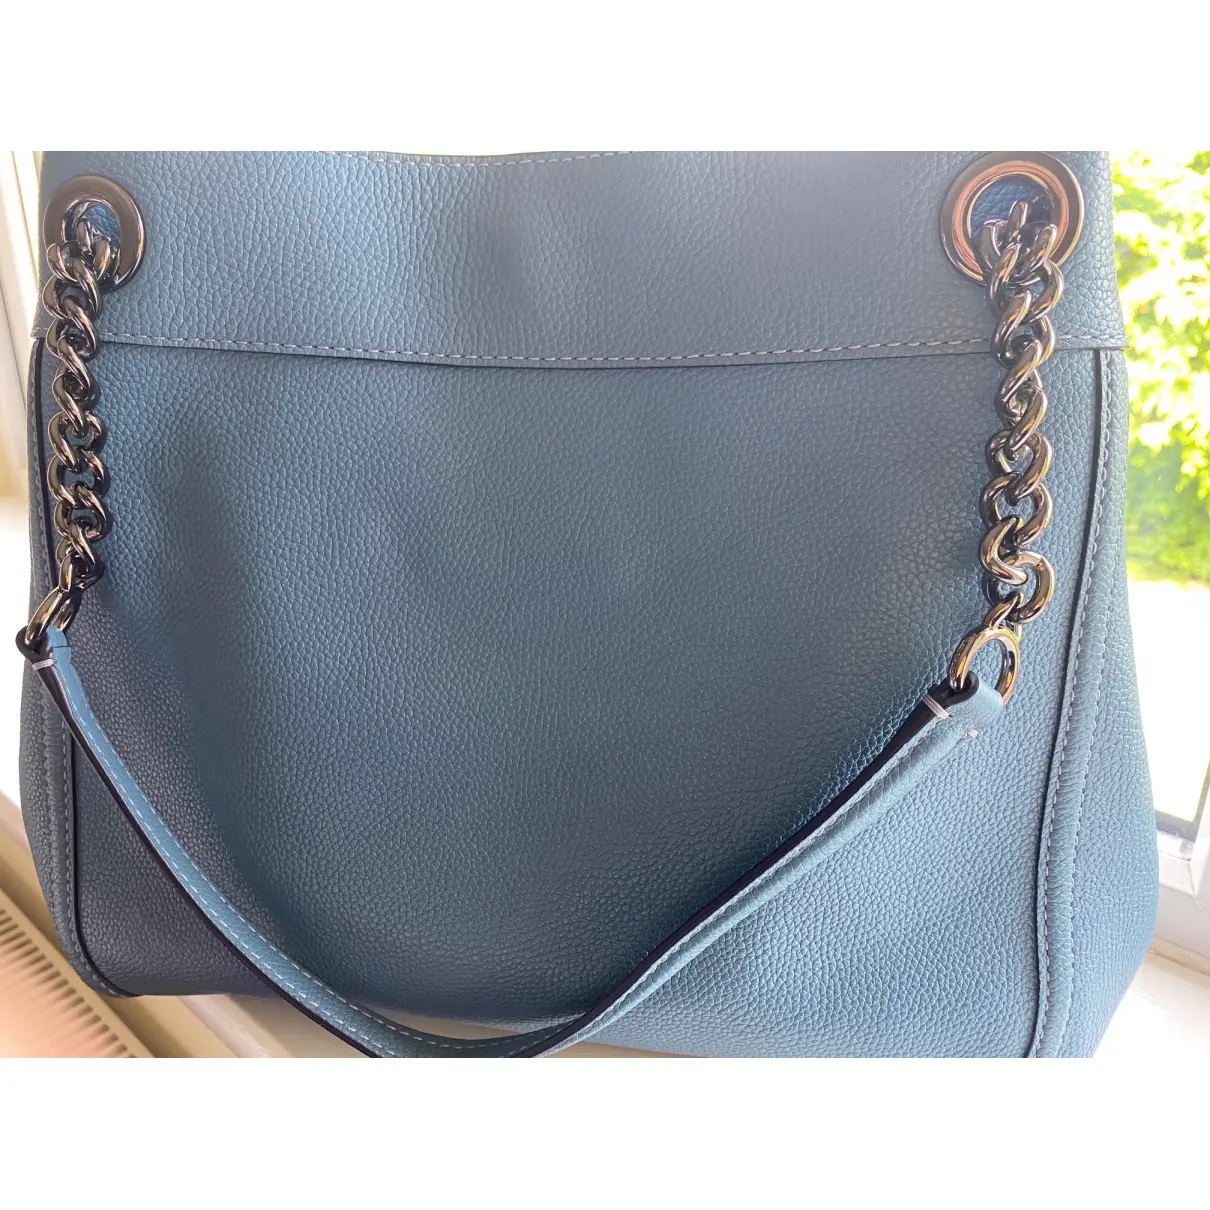 Buy Coach Edie leather handbag online